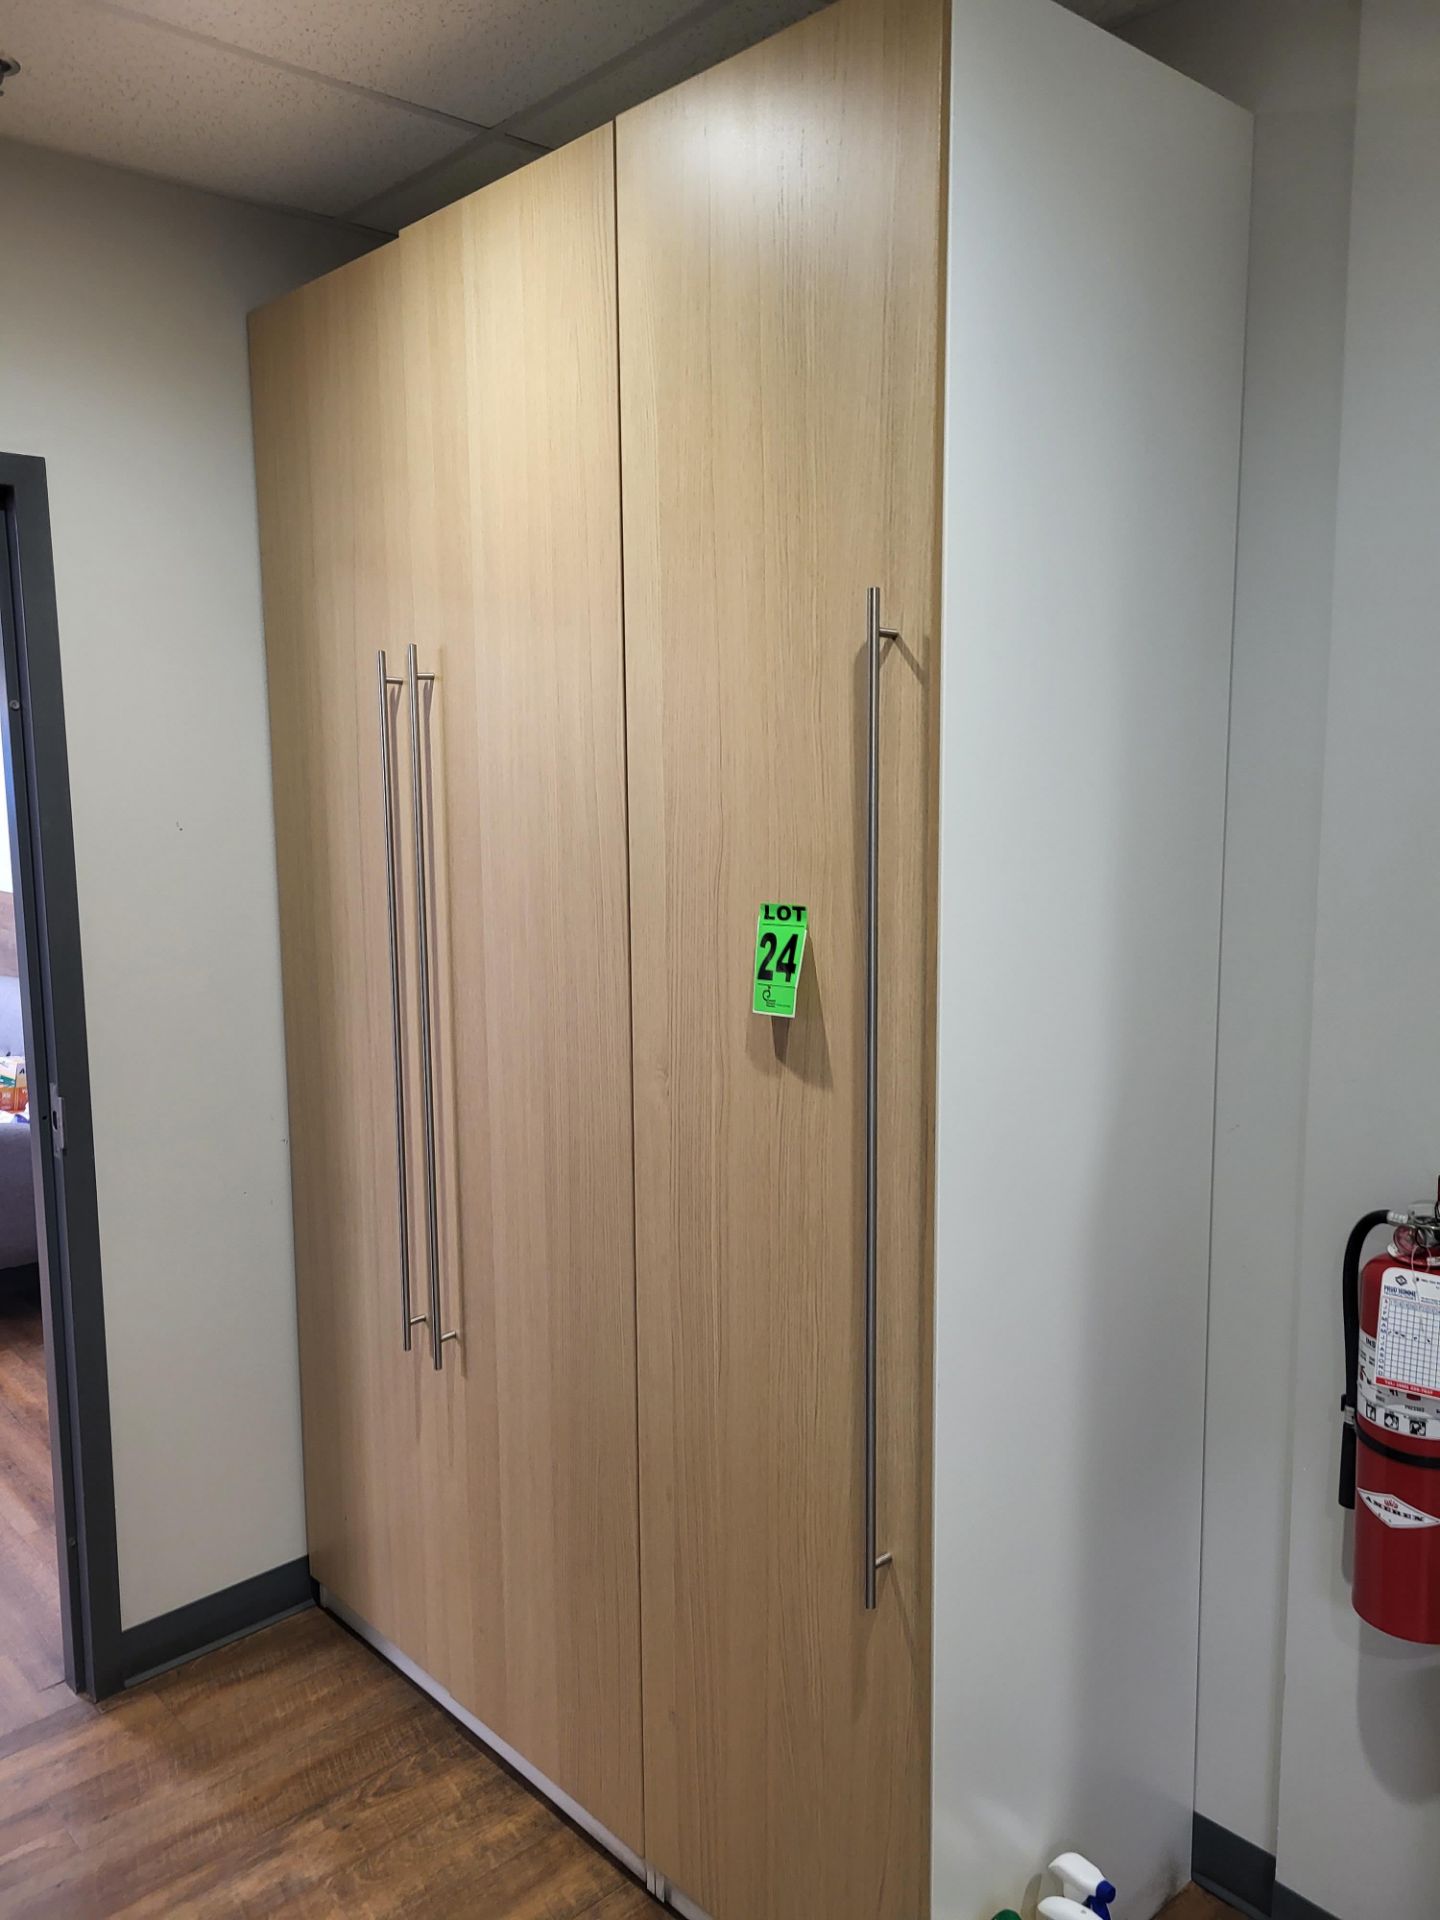 3-Door Cabinet Unit - Image 2 of 2